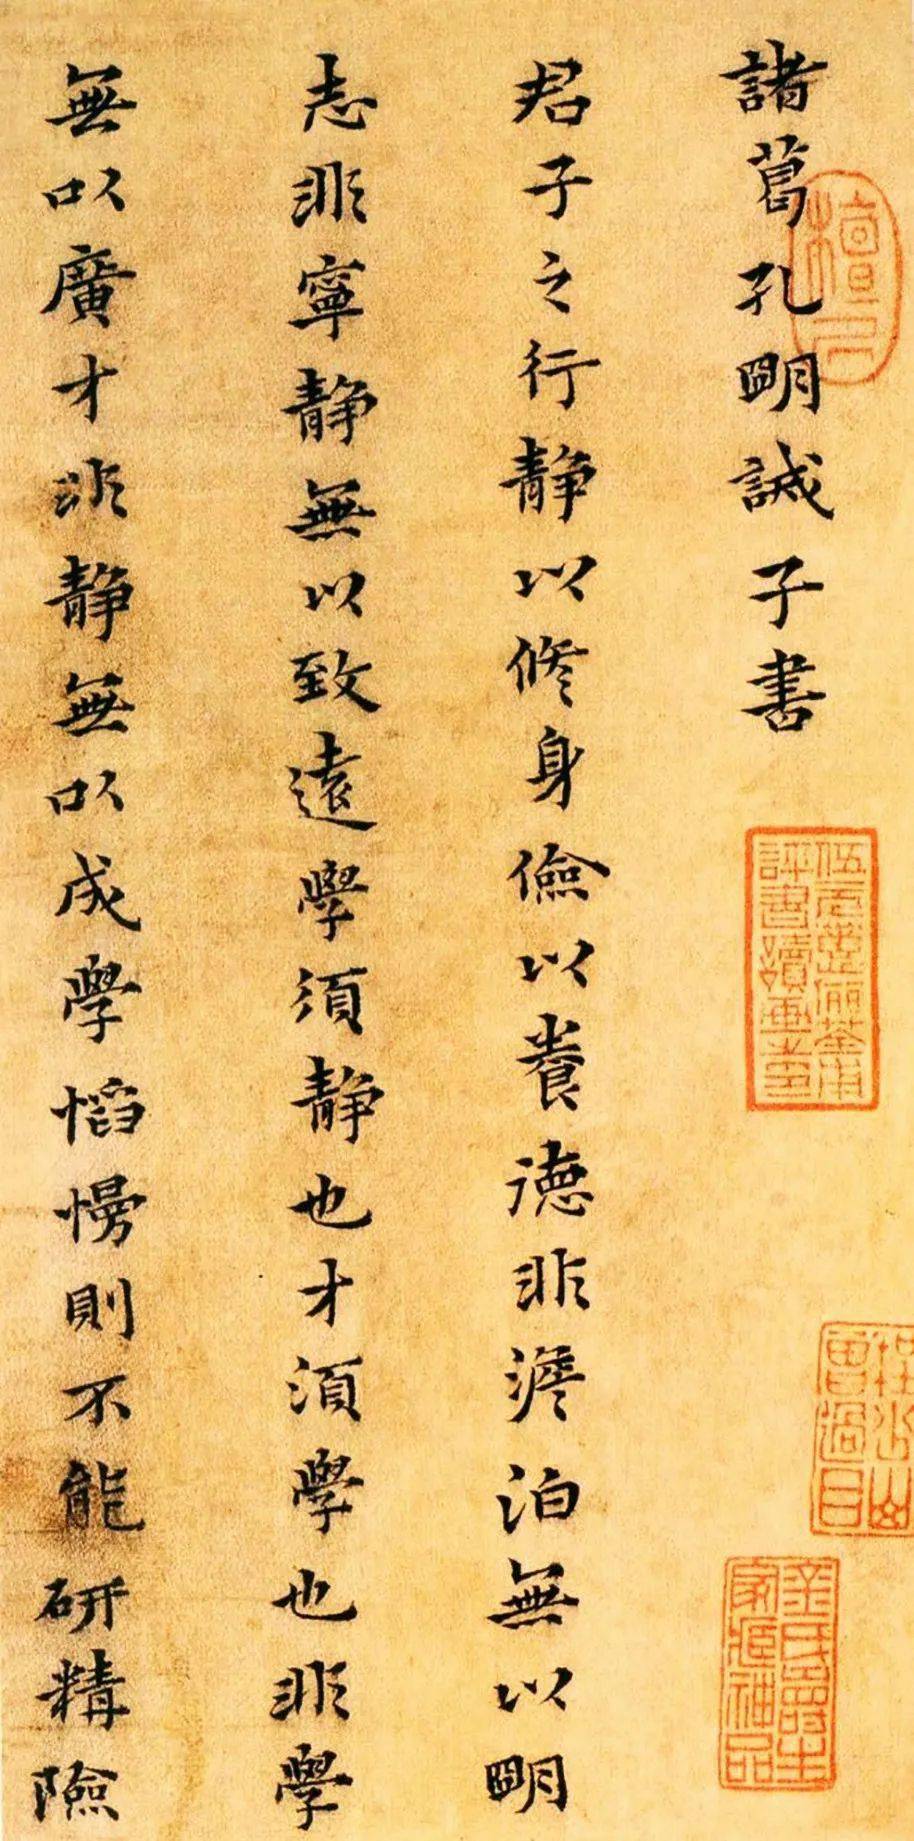 汉朝法律制度儒家化的体现_儒家美学影响下的设计表现有_儒家思想在美学中何以体现